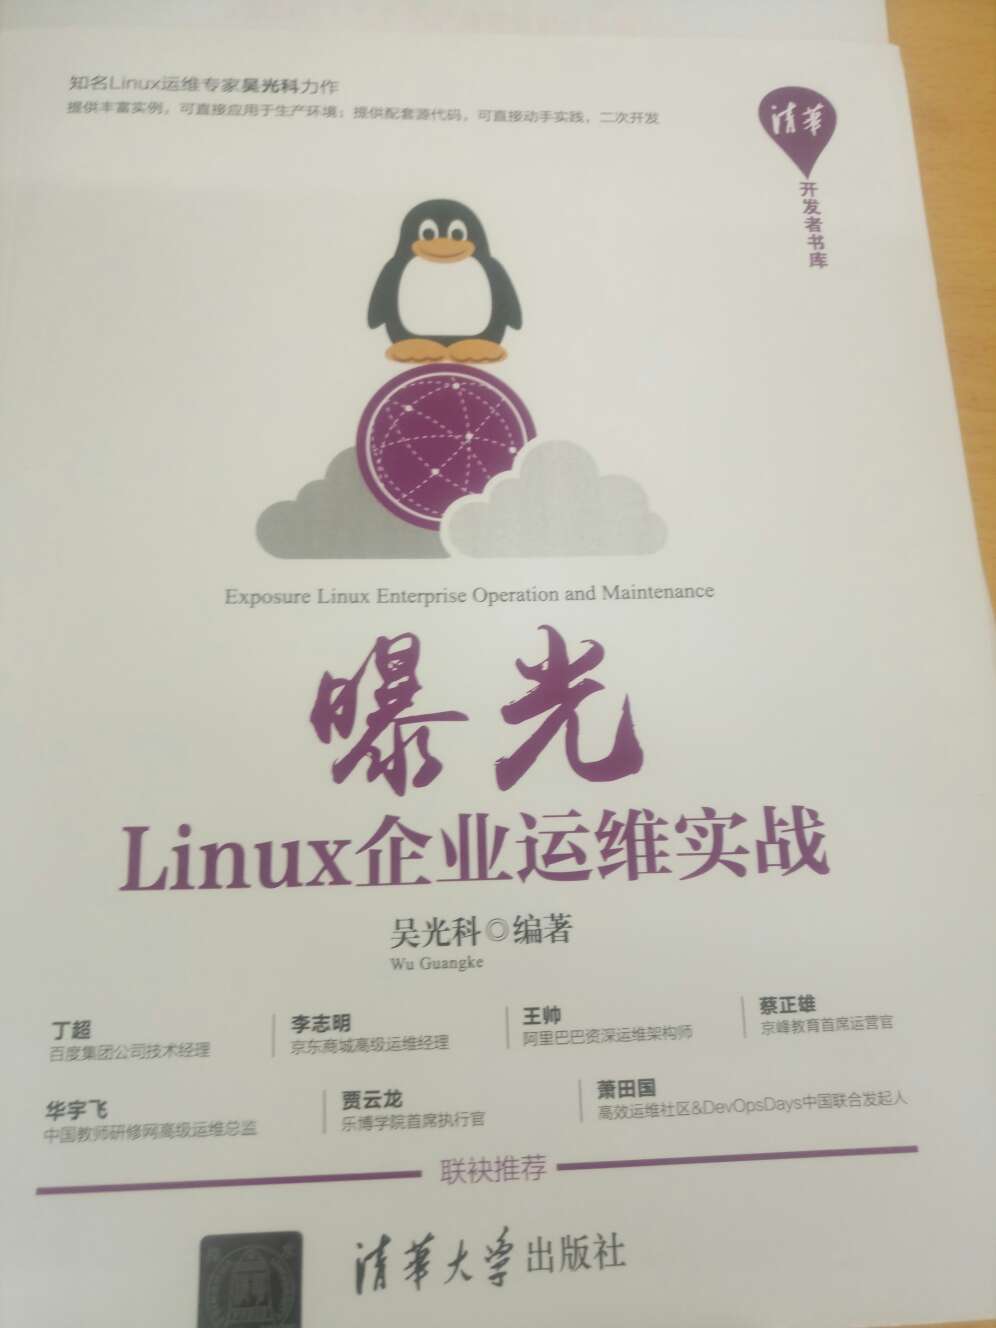 吴老师这本书内容丰富，脉络清晰，知识全面，基本上囊括了企业需要的运维技术，非常不错的一本linux学习宝典，值得购买。